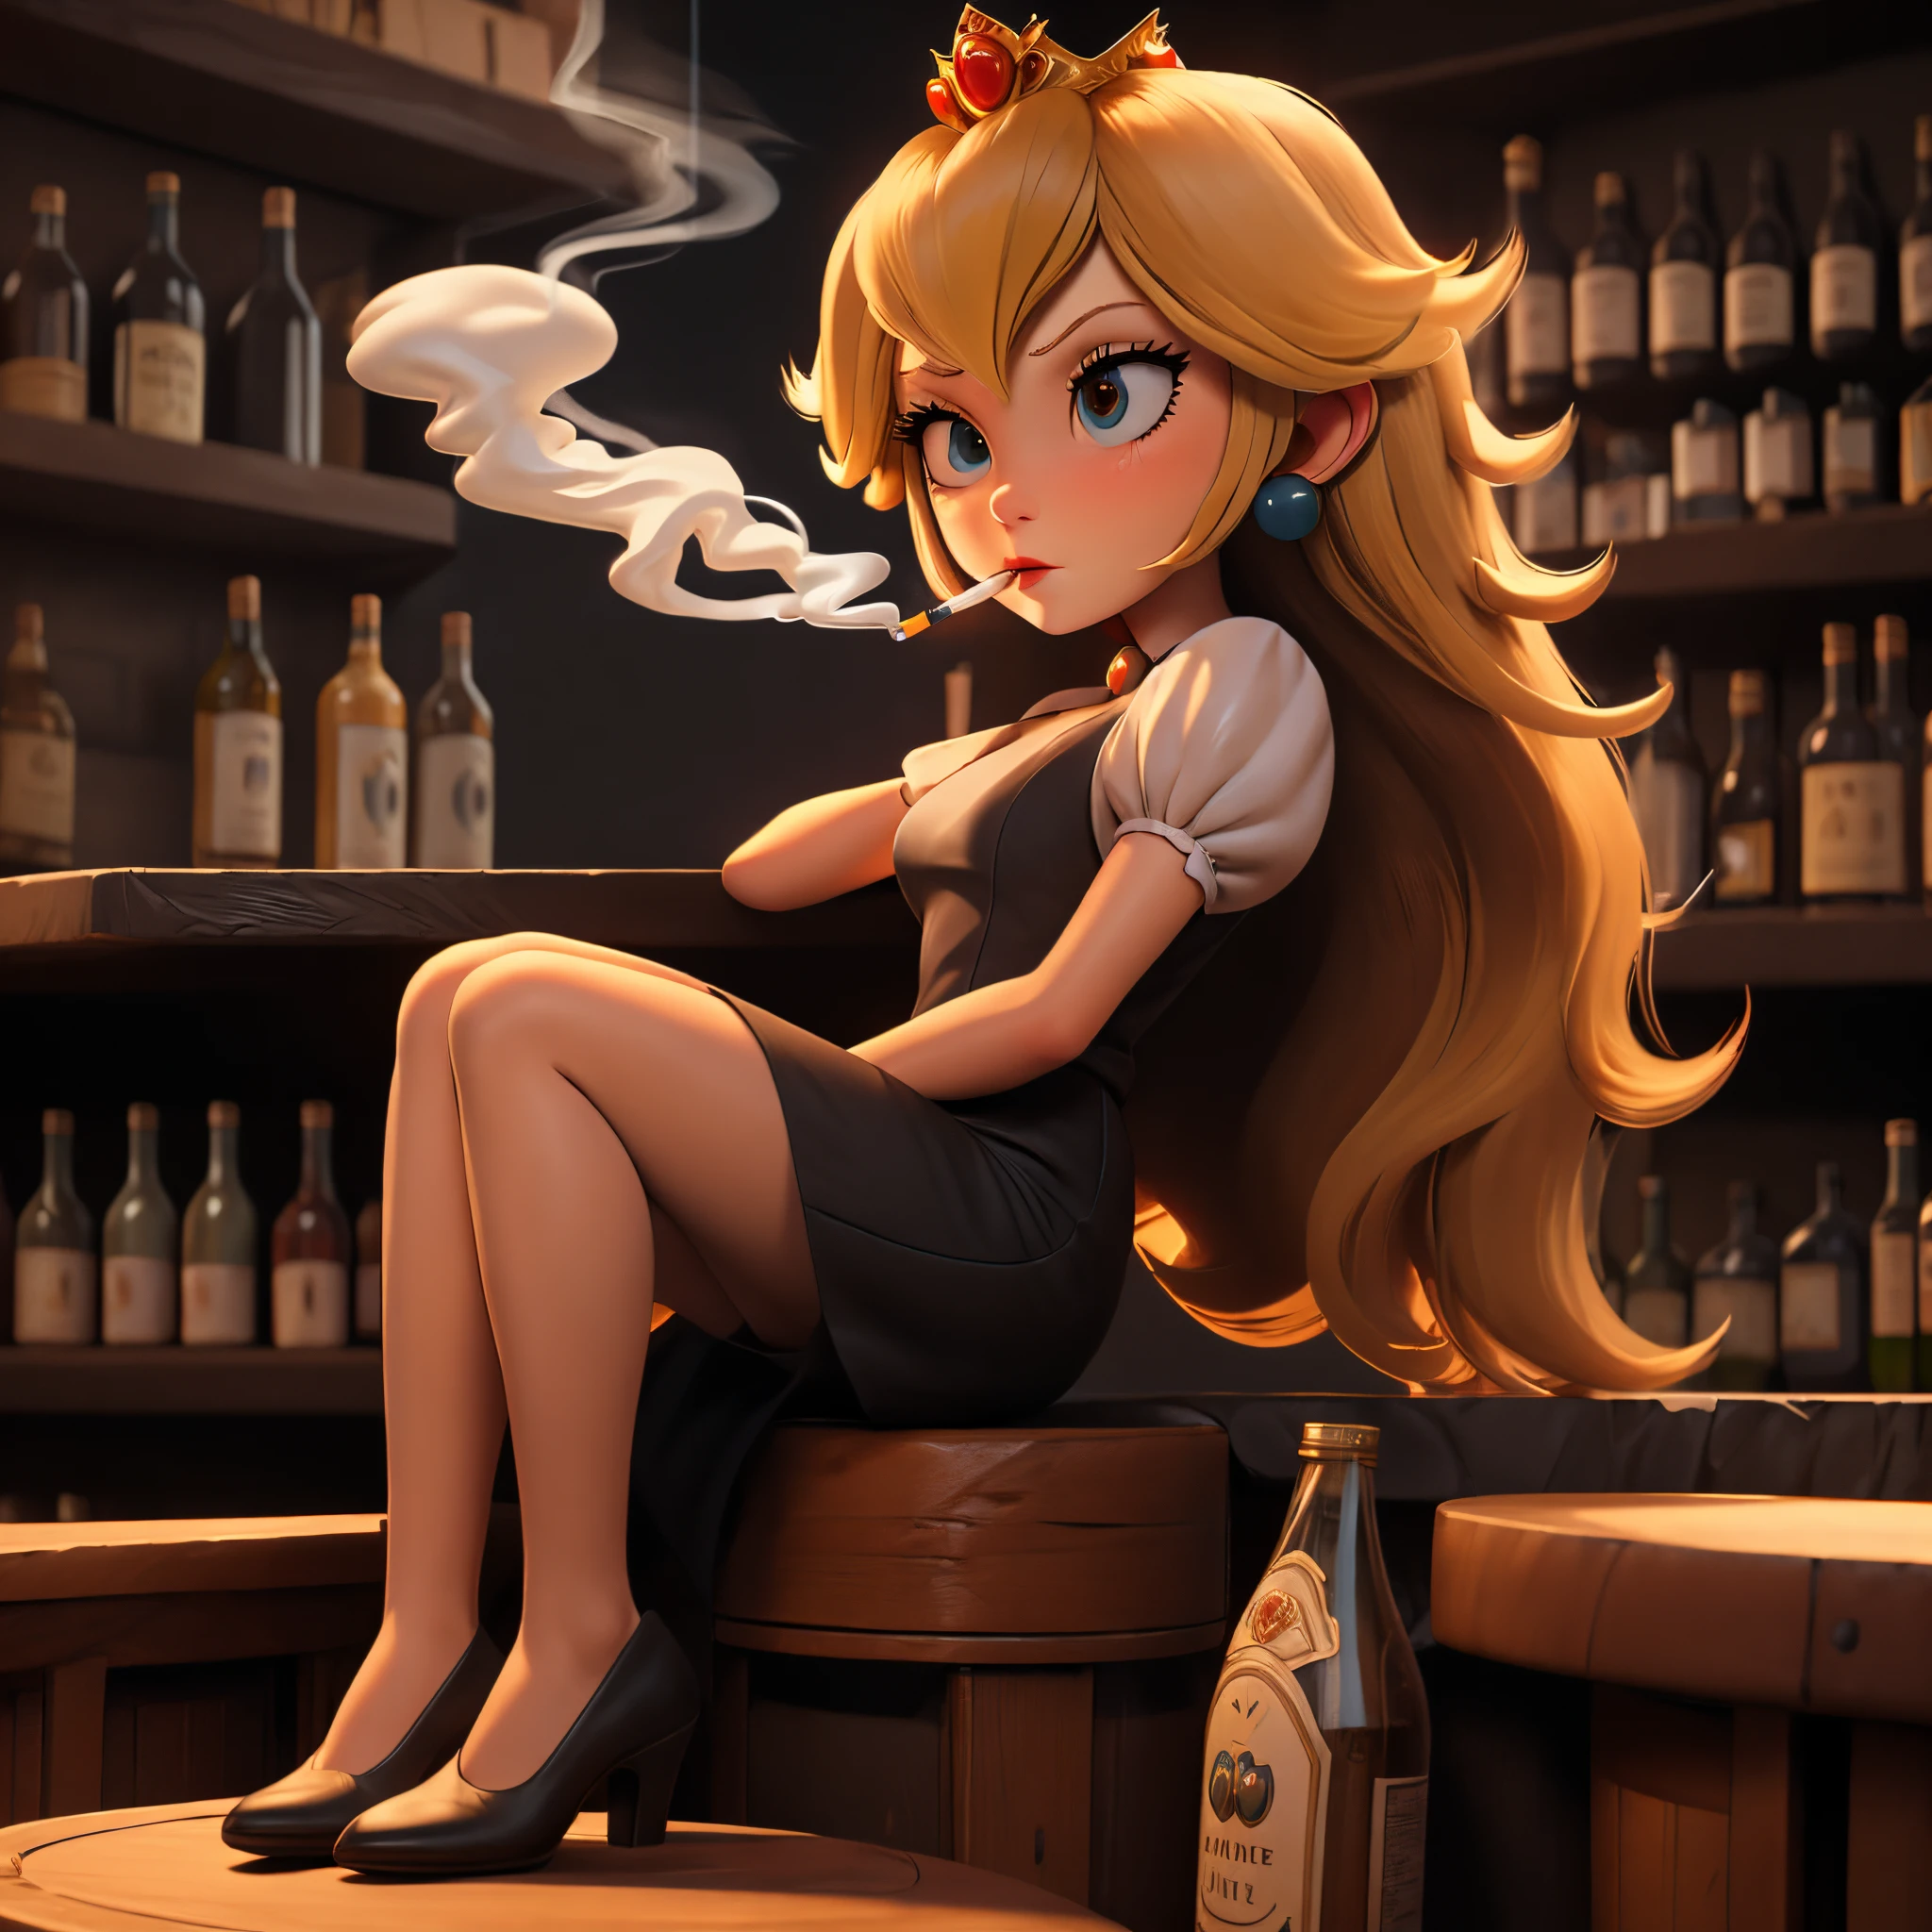 Princesa Peach fumando em um bar escuro, expressão facial pensativa, terno de negócios, filme sombrio, tiro de corpo inteiro, sentado no bar, garrafas antigas,